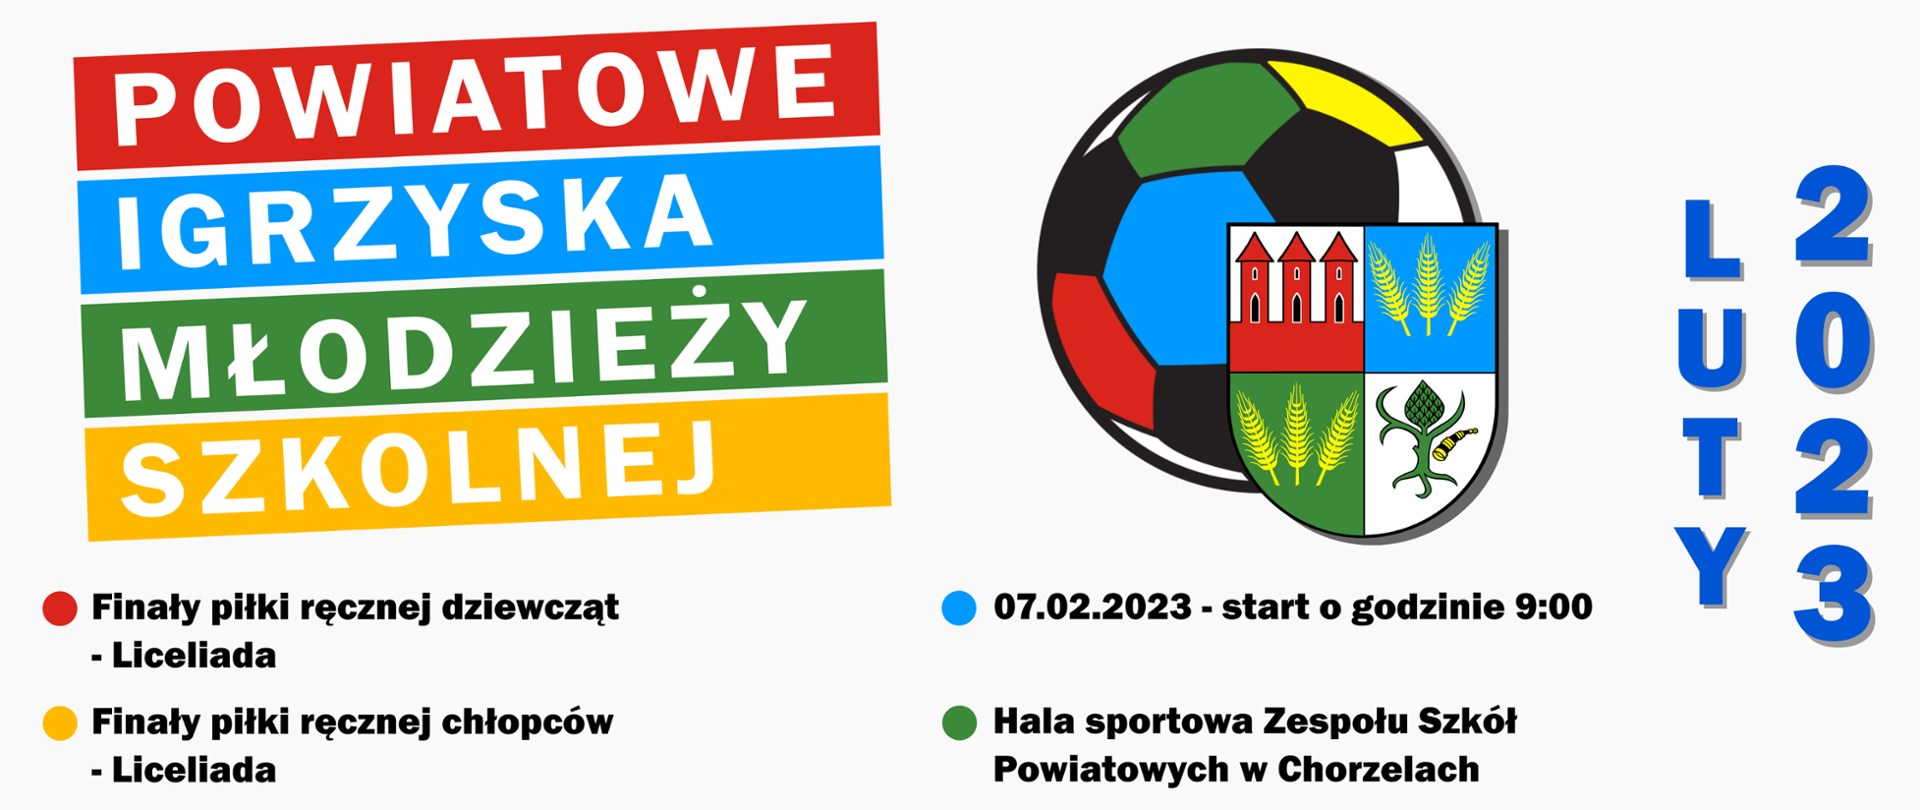 Powiatowe Igrzyska Młodzieży Szkolnej - luty 2023, piłka ręczna. Treść w artykule.